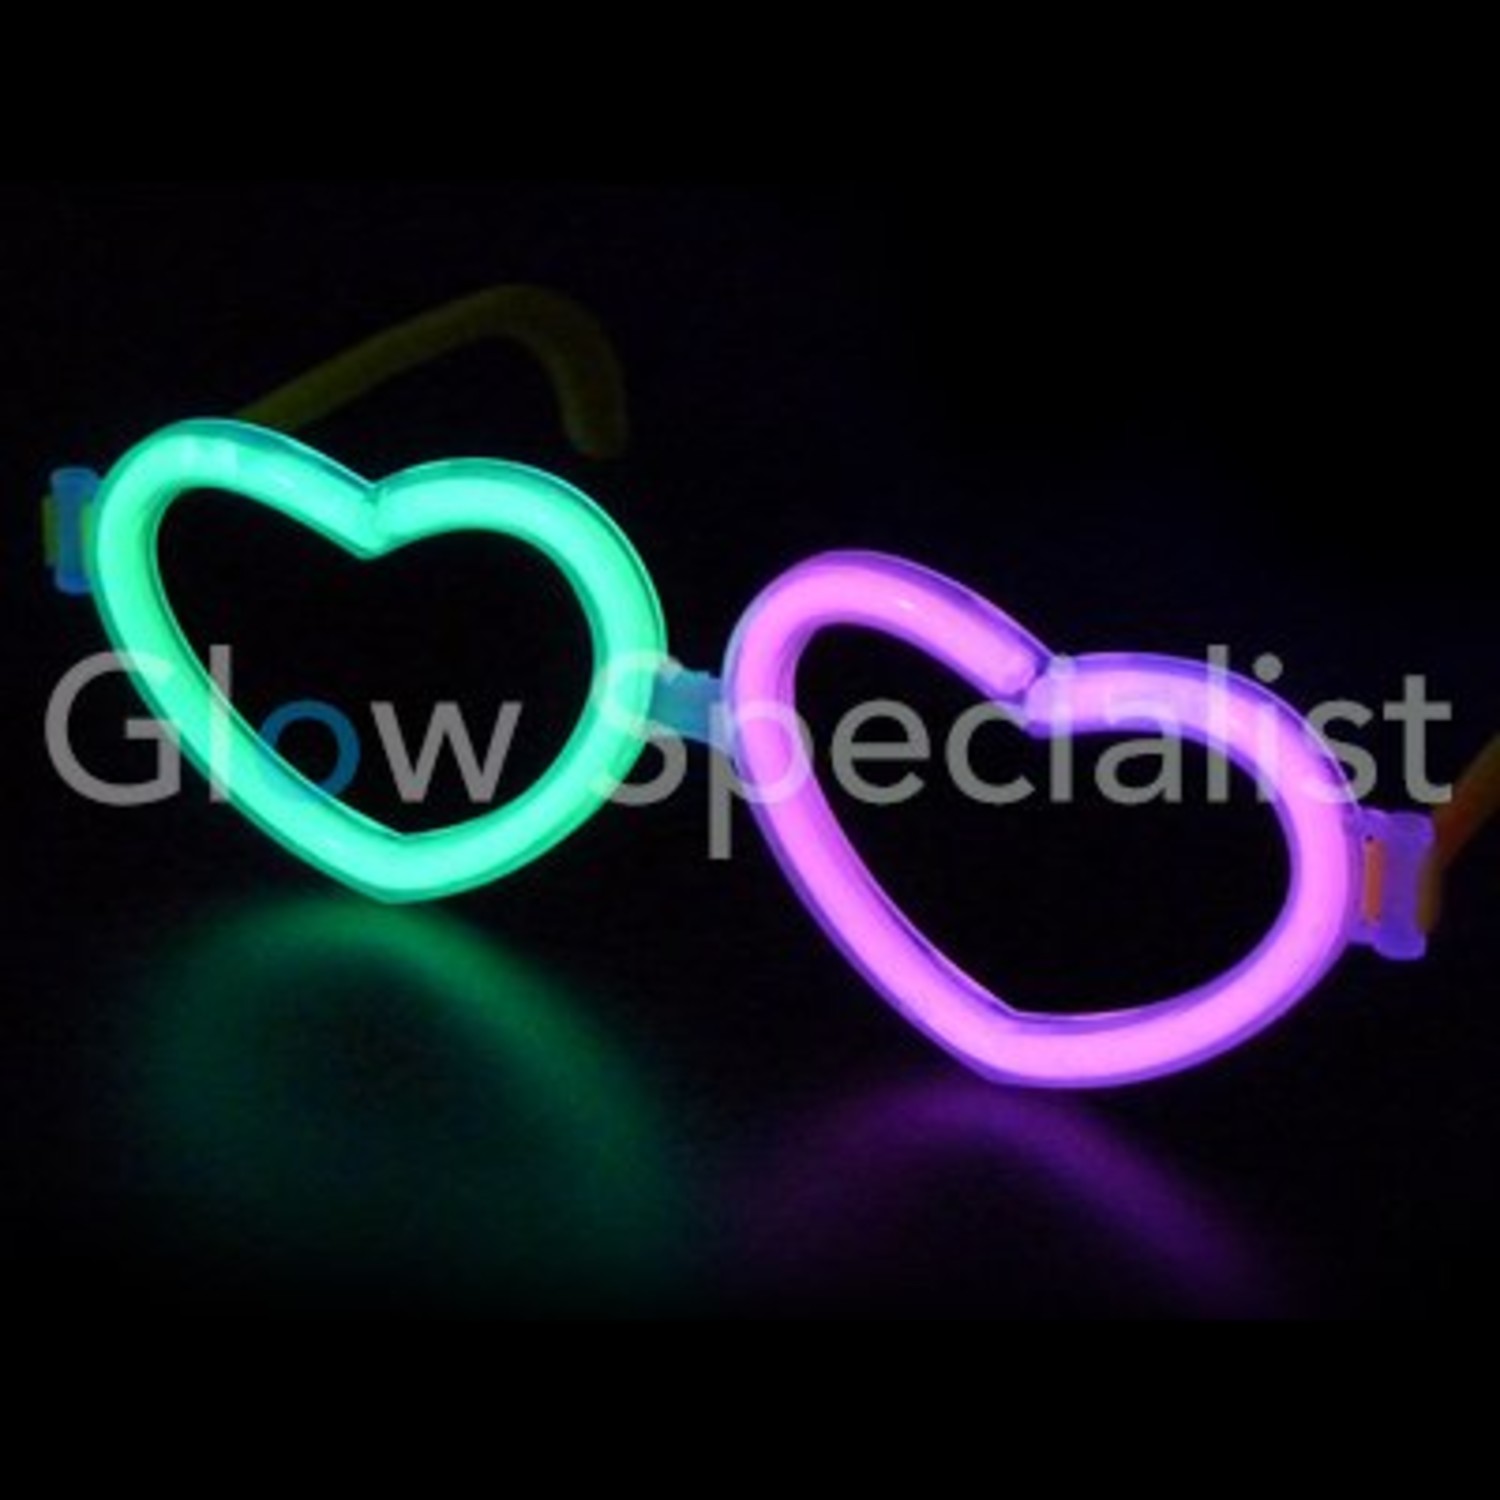 Glow Sticks Bulk -205-Pcs- Glow in The Dark 100 Party Sticks -Supplies w/  Eye Gl